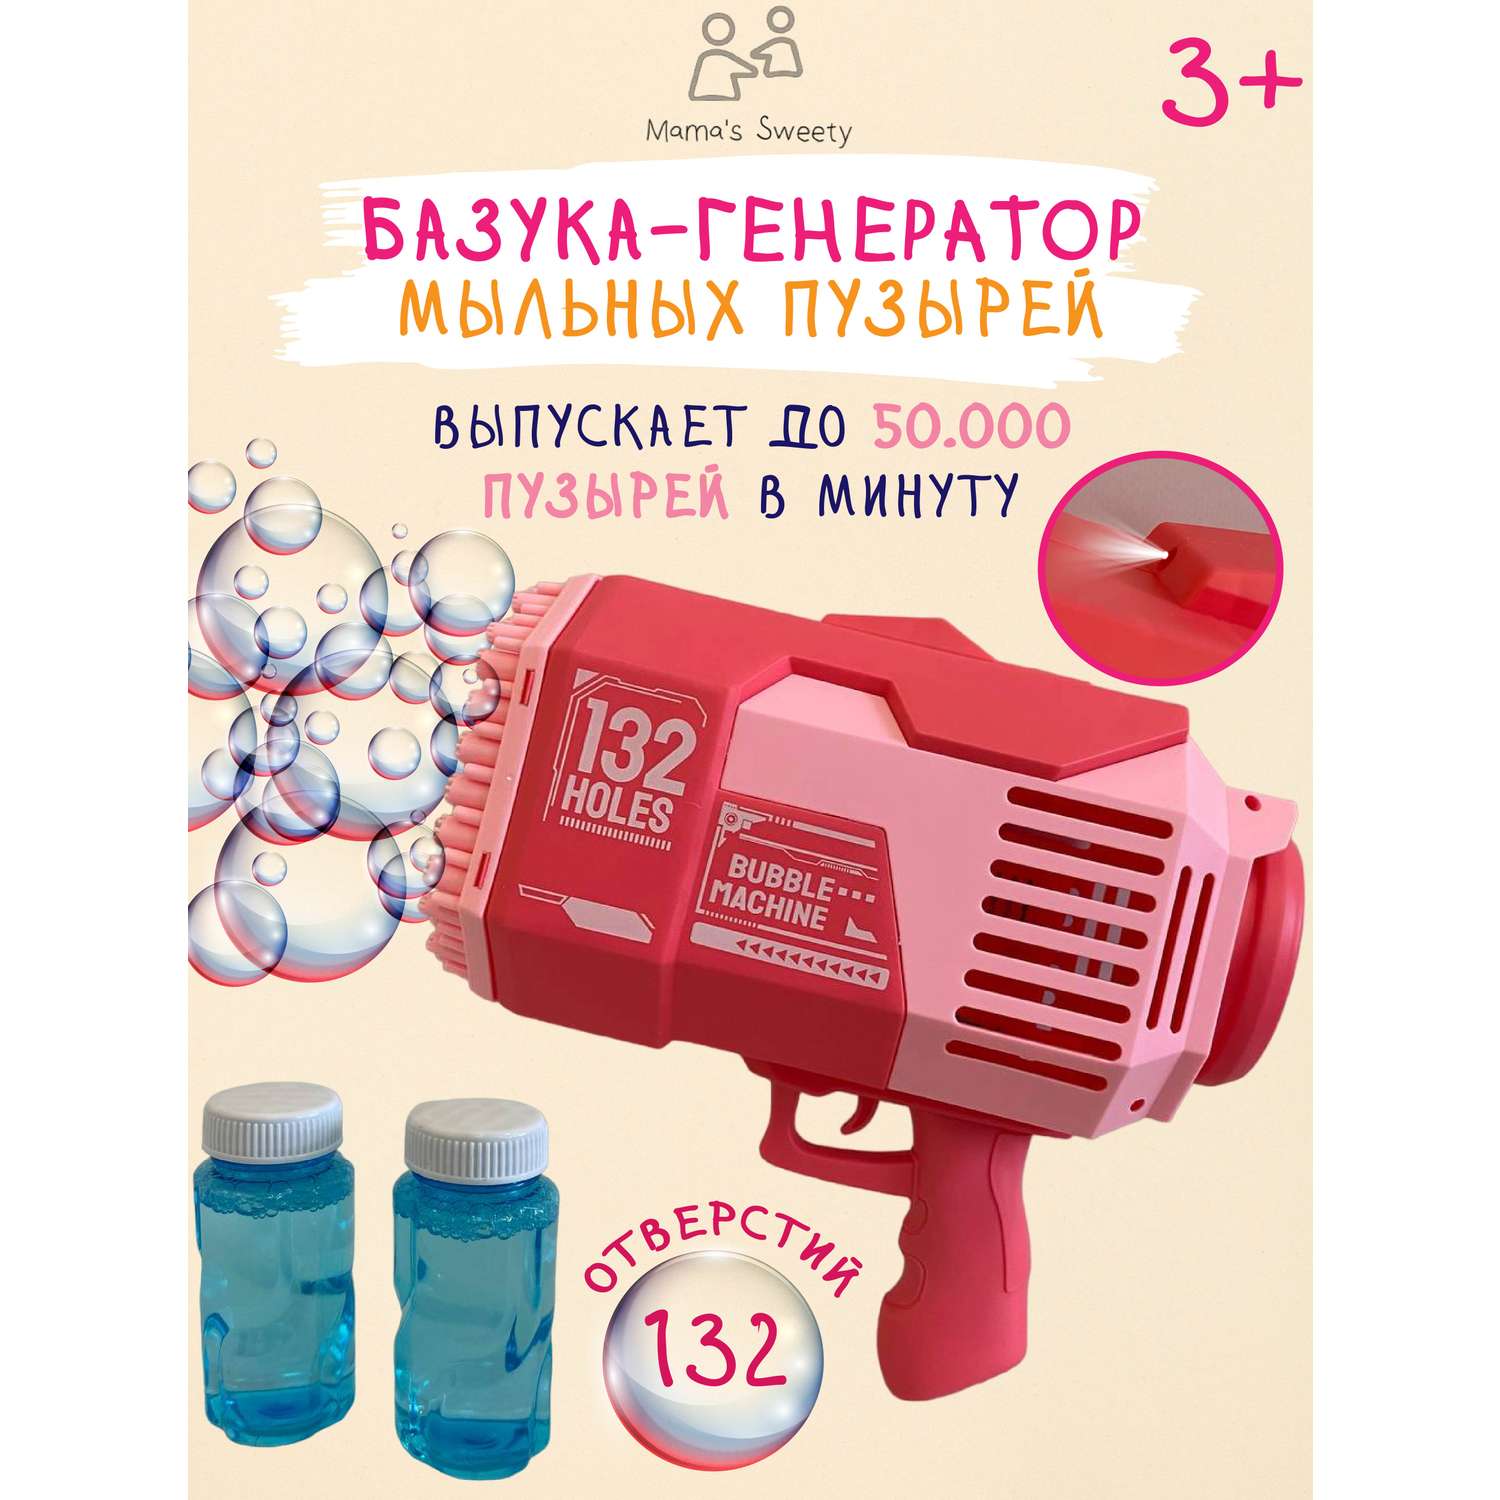 Базука-пистолет Mamas Sweety генератор мыльных пузырей розовый - фото 1